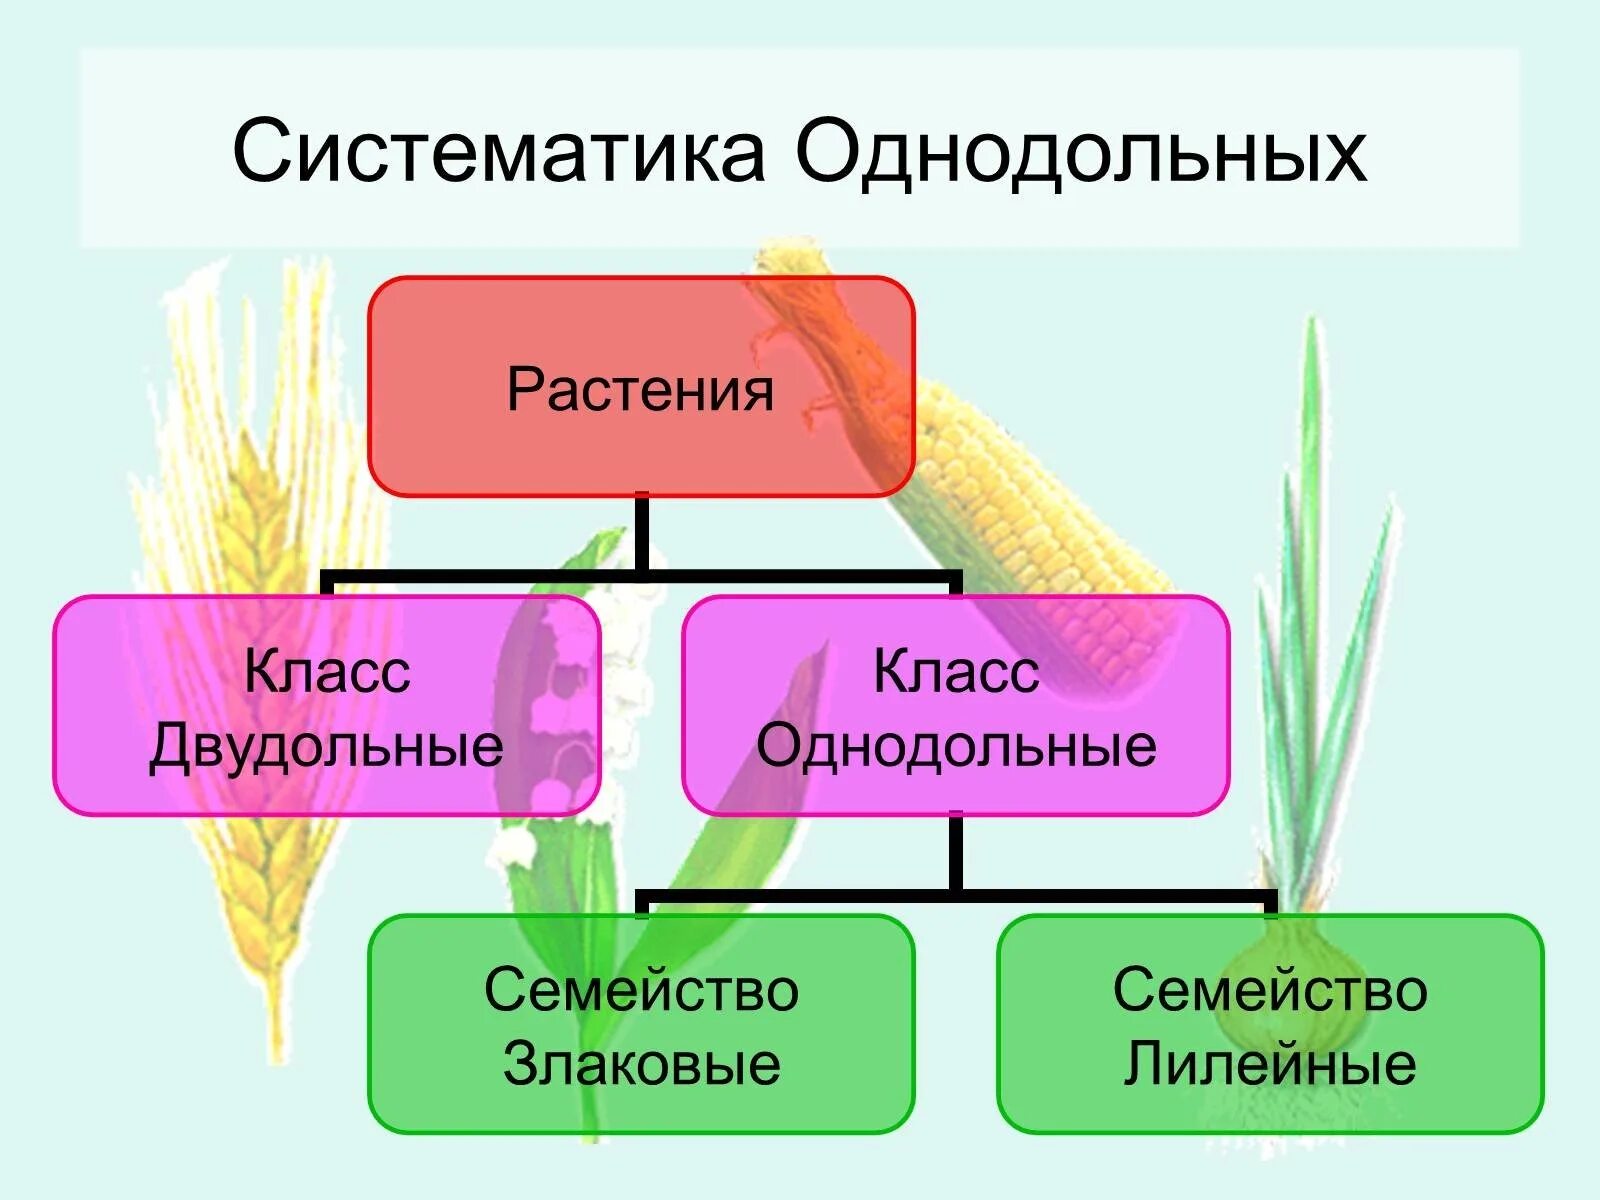 Спаржа однодольное или двудольное растение. Систематика цветковых растений однодольных. Систематика однодольных растений. Класс Однодольные систематика. Класс Однодольные растения.